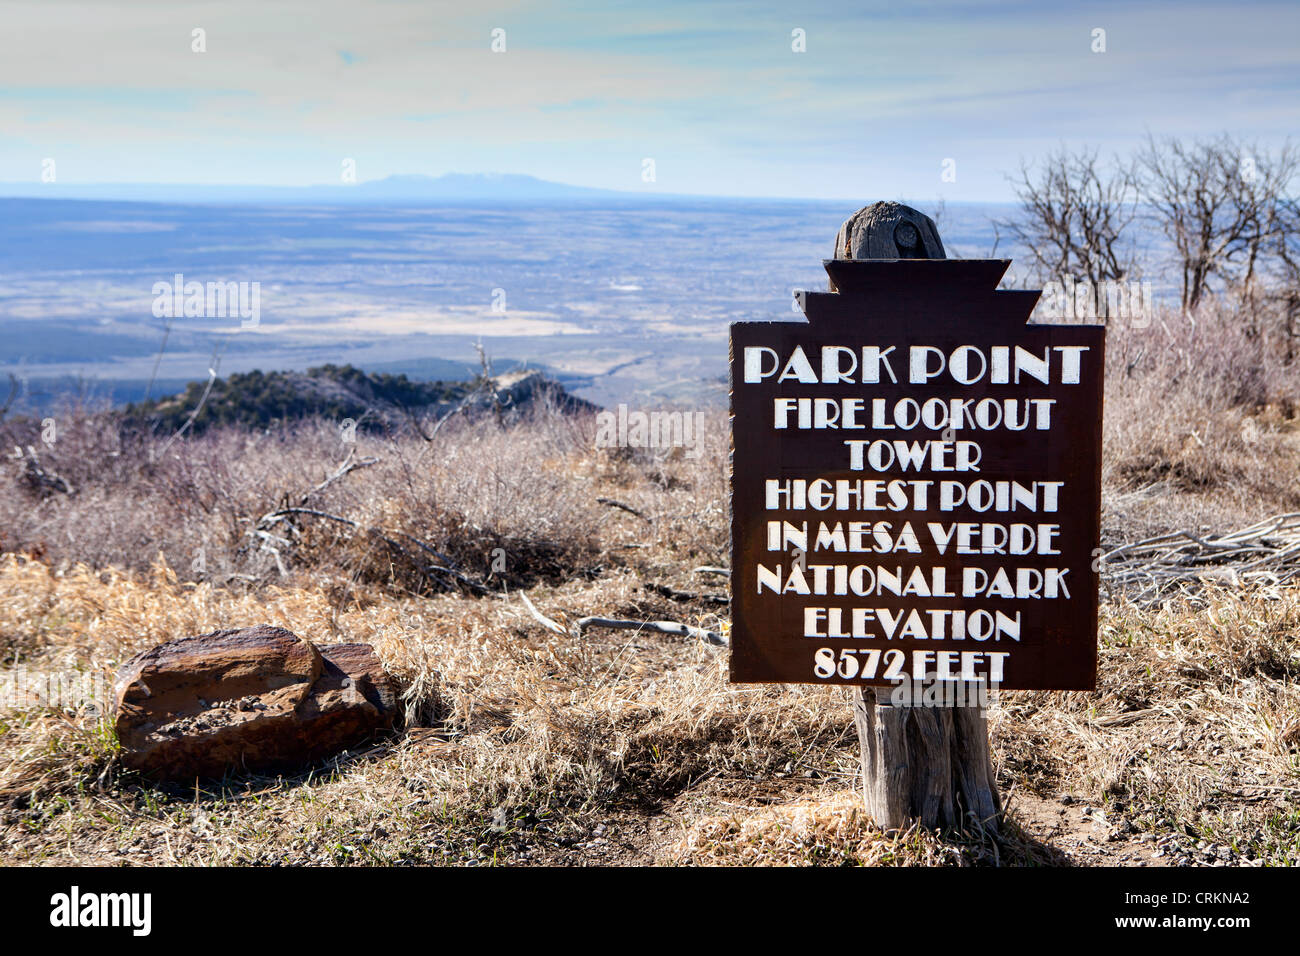 Il Parco Nazionale di Mesa Verde, Colorado, Parco punto Fire lookout tower segno del marcatore Foto Stock